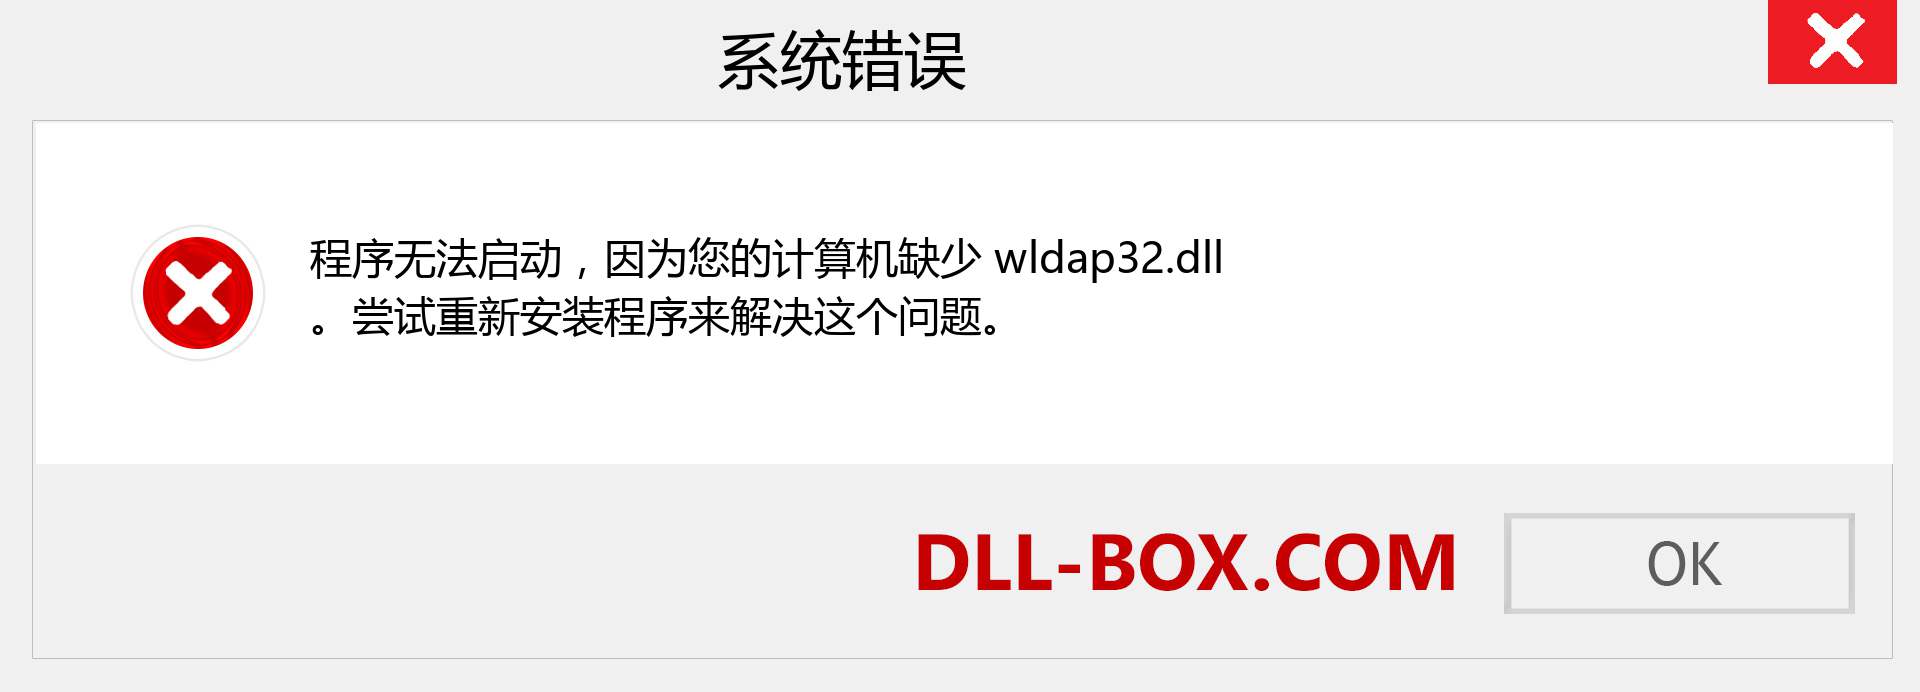 wldap32.dll 文件丢失？。 适用于 Windows 7、8、10 的下载 - 修复 Windows、照片、图像上的 wldap32 dll 丢失错误